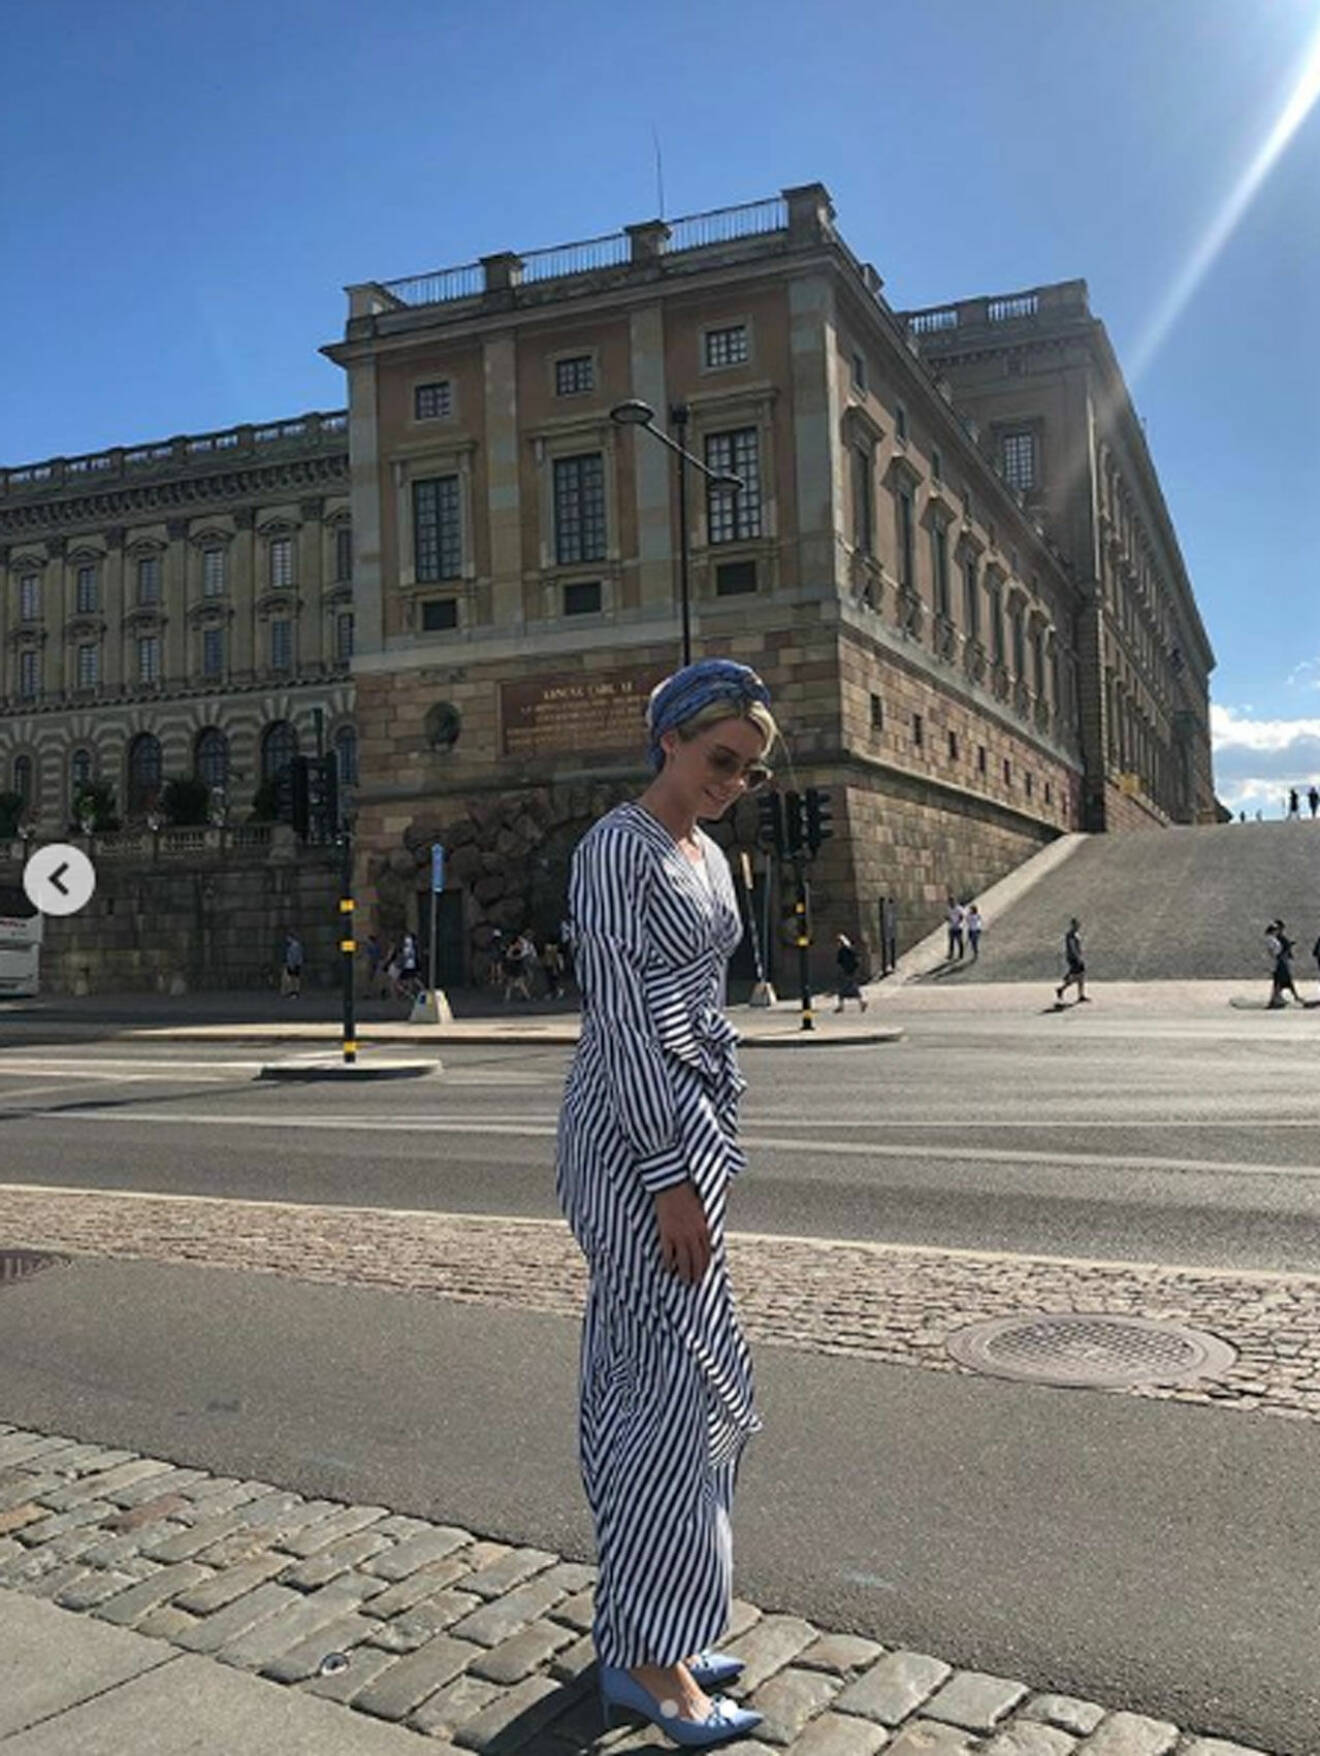 Prinsessan Sofia Louise av Malaysia (född Johansson) på semester i Stockholm, hon står framför Kungliga slottet.